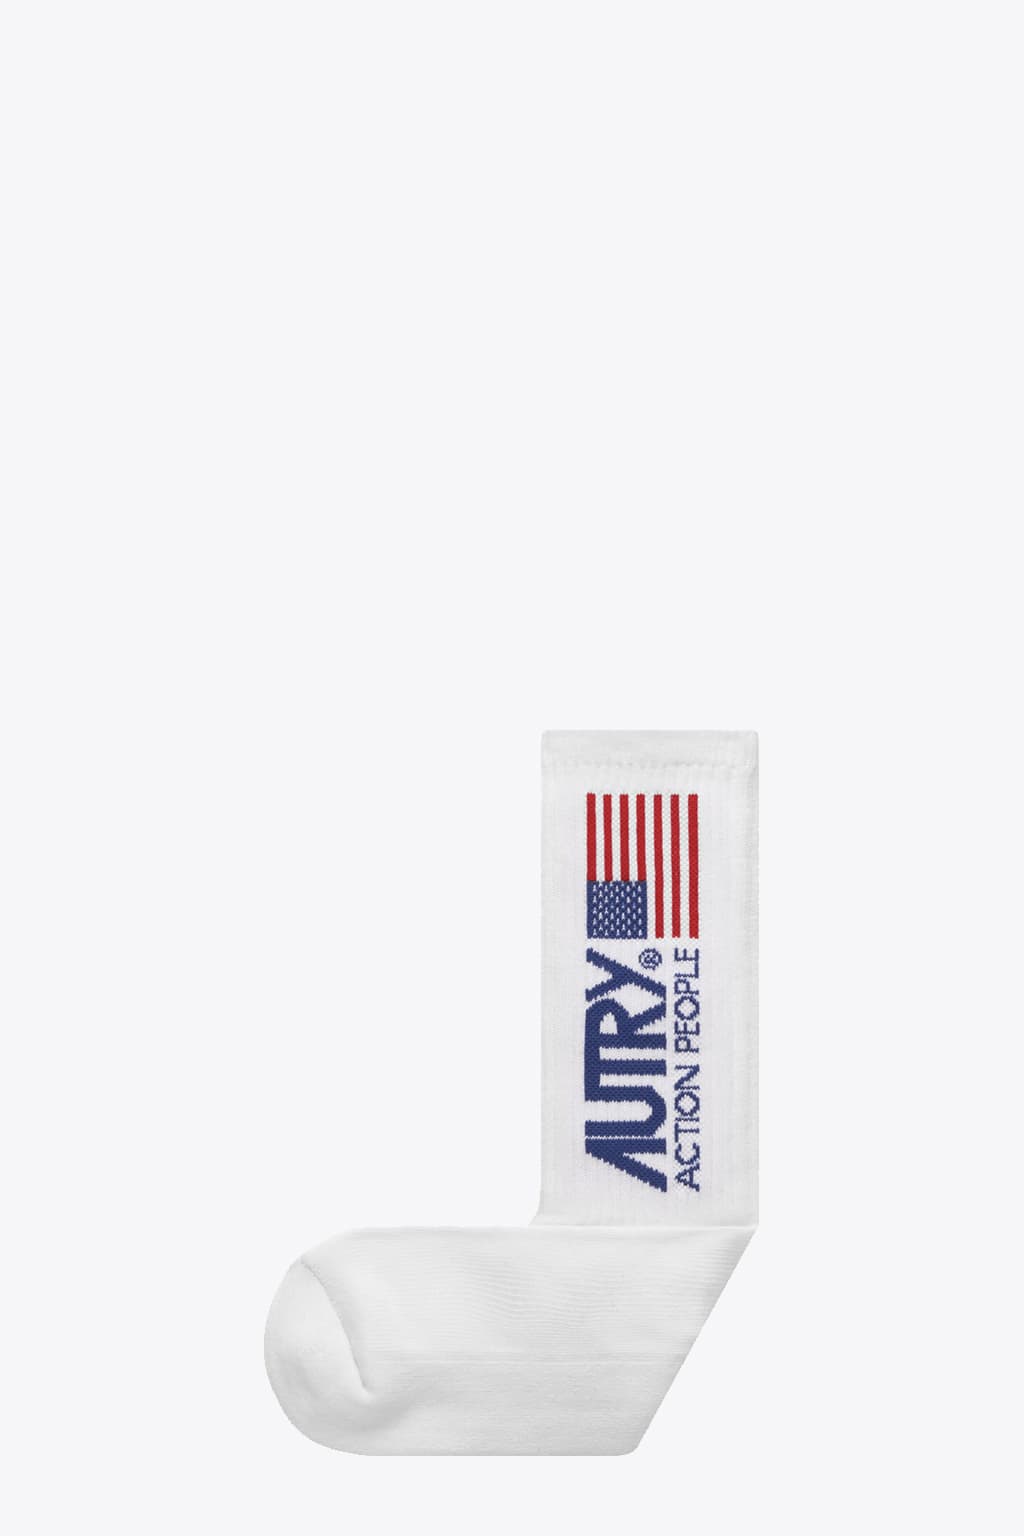 Autry Socks Iconic Unisex White White ribbed cotton socks with logo.